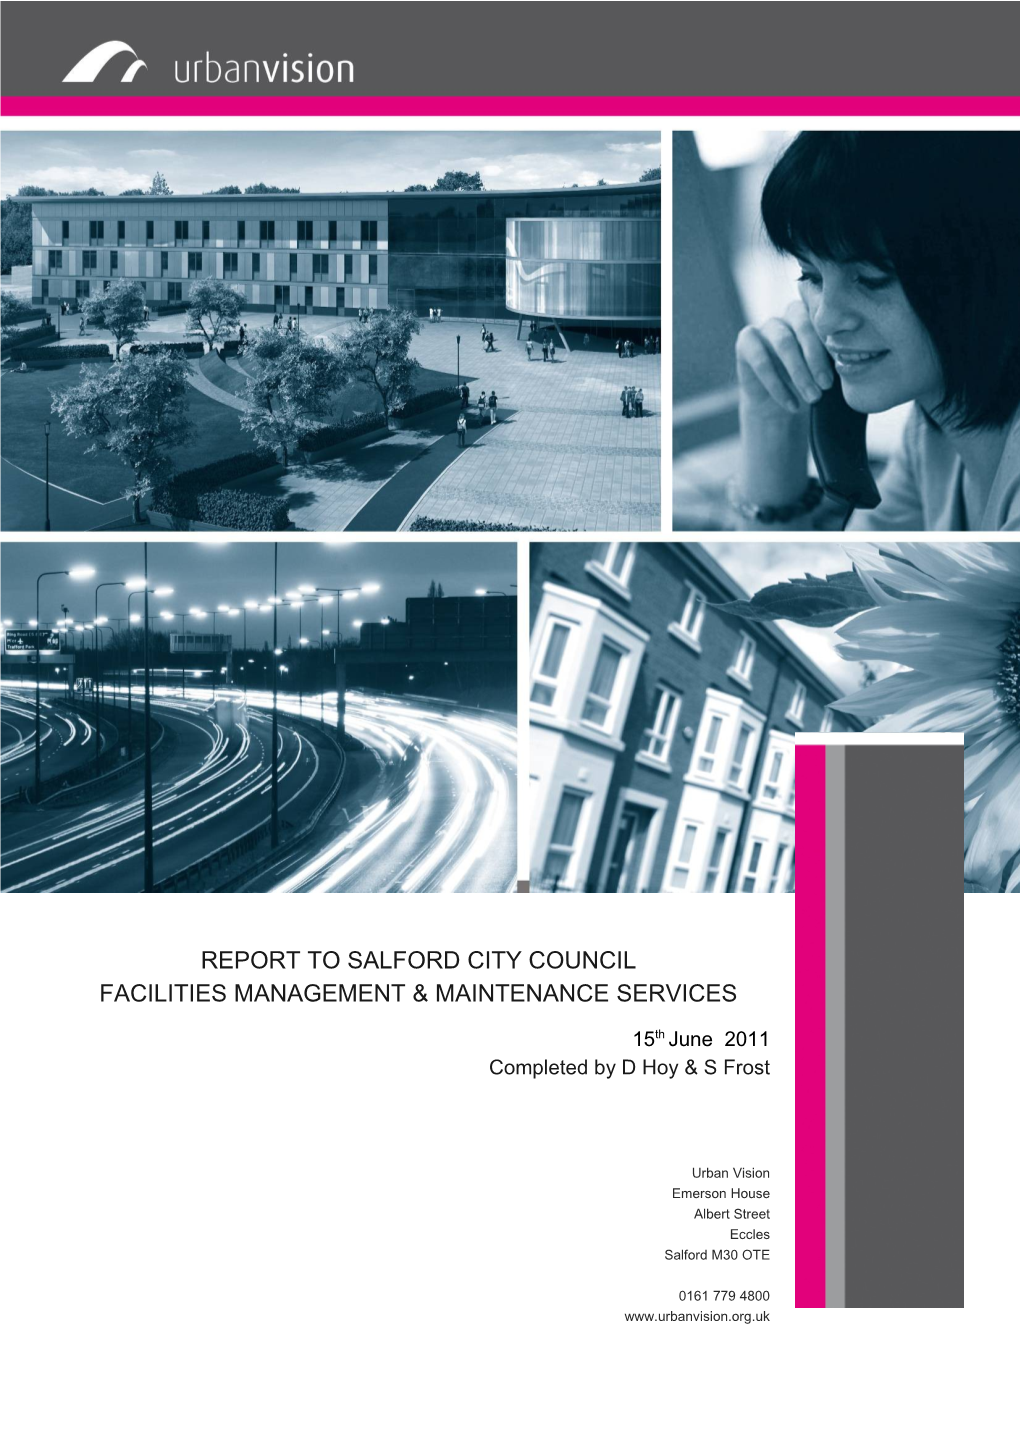 2.Facilities Management & Maintenance Services